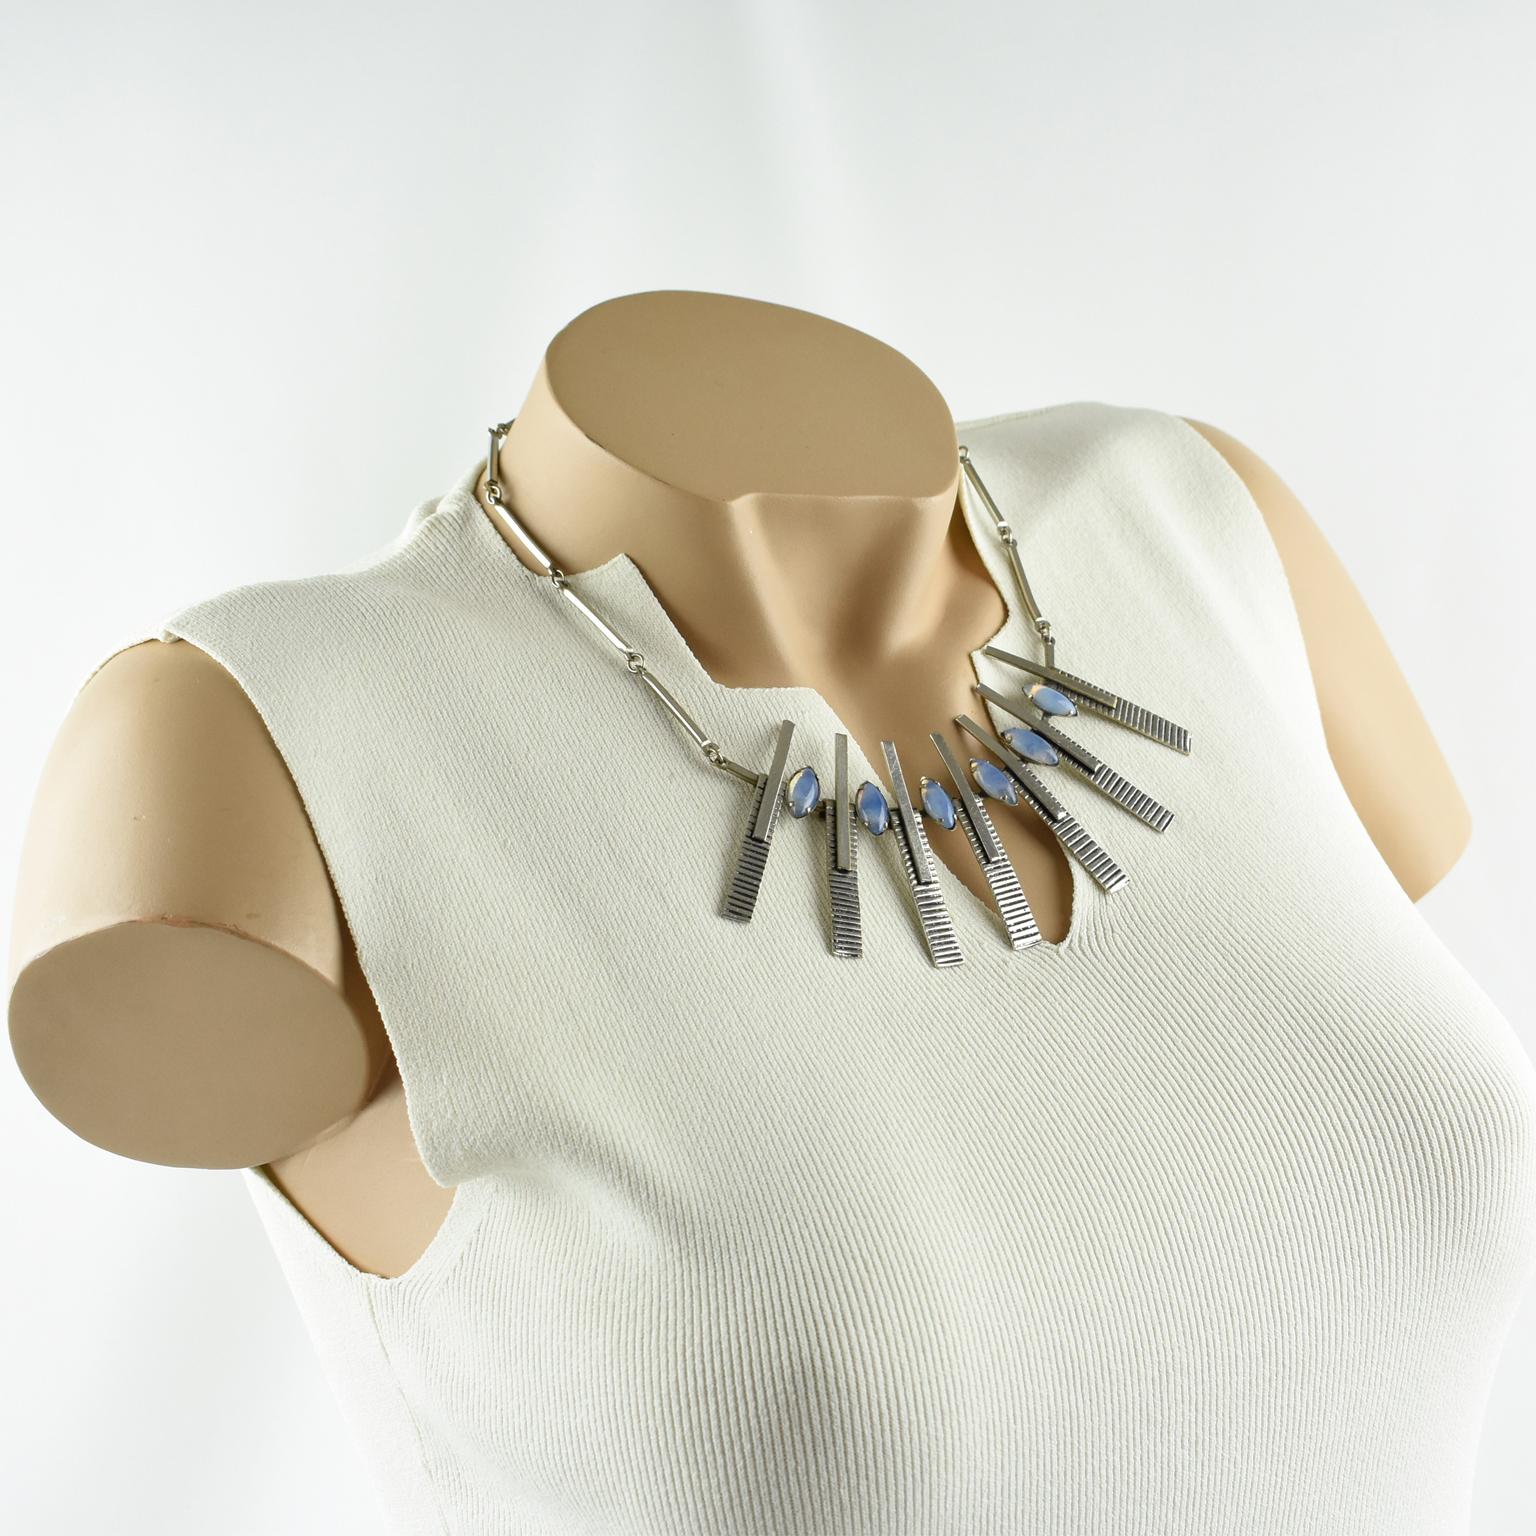 Diese atemberaubende 1970er Space Age Halskette hat einen modernistischen, geometrischen Anhänger in der Mitte. Die Halskette besteht aus einer starren verchromten Metallkette mit einem großen Anhänger in der Mitte und einem Hakenverschluss. Die